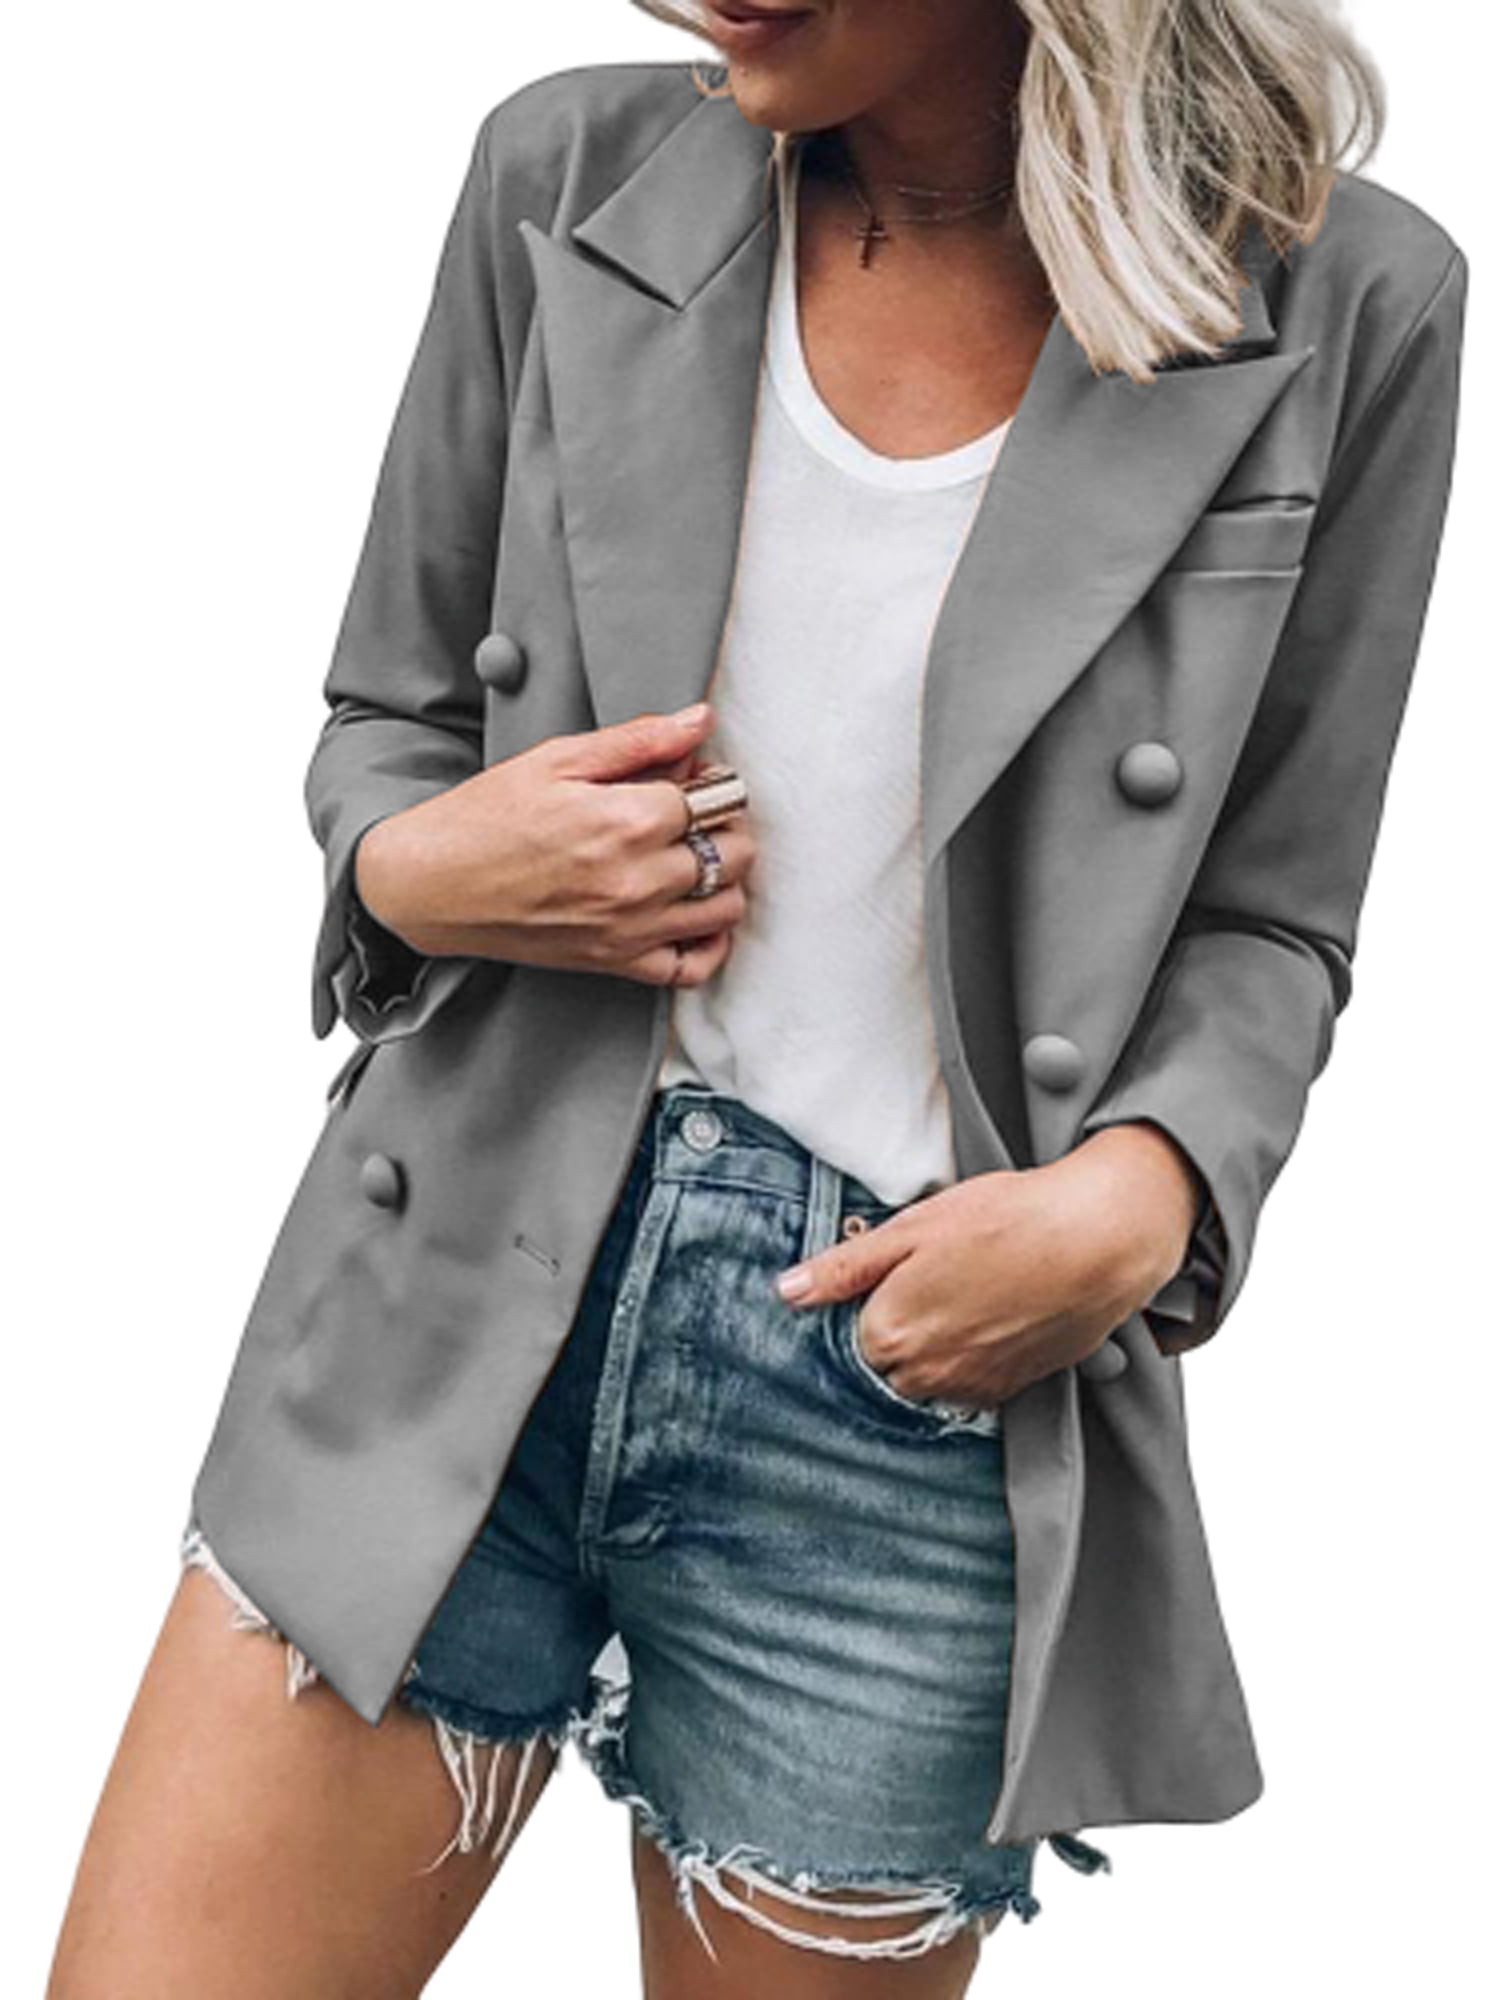 Eyicmarn - Women Slim Casual Blazer Jacket Top Outwear Long Sleeve ...